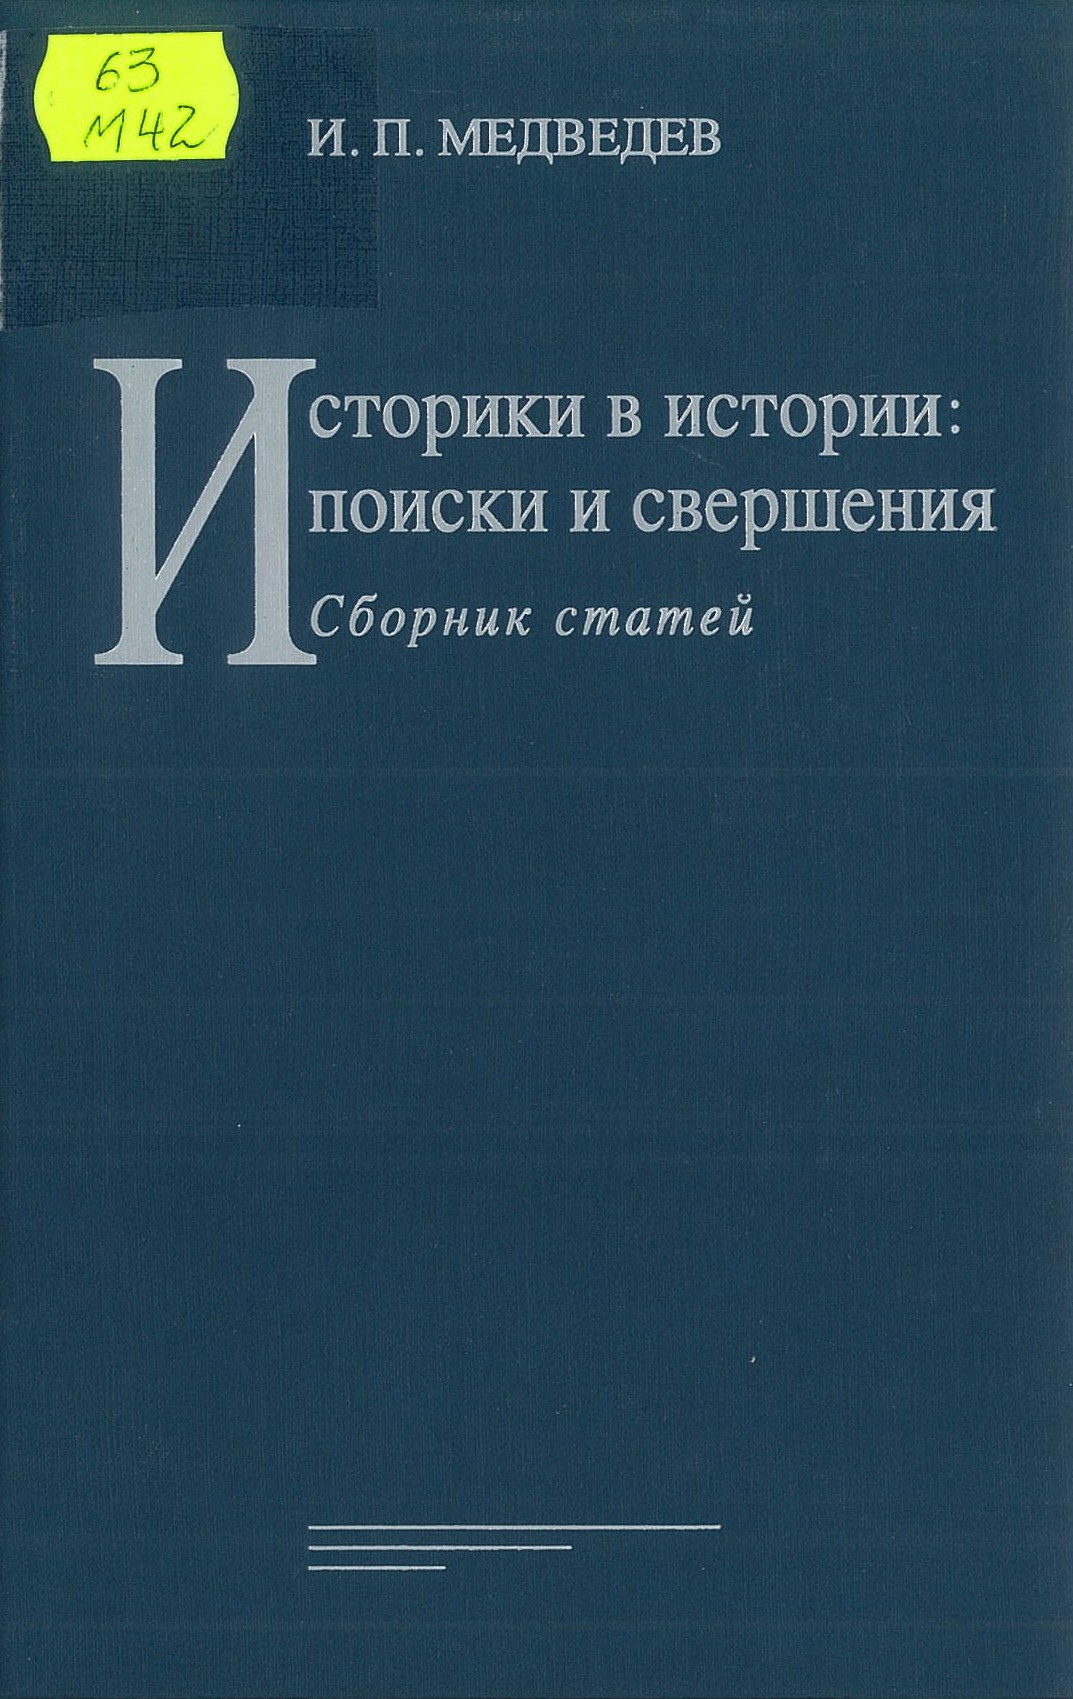 Медведев, И. П. Историки в истории: поиски и свершения